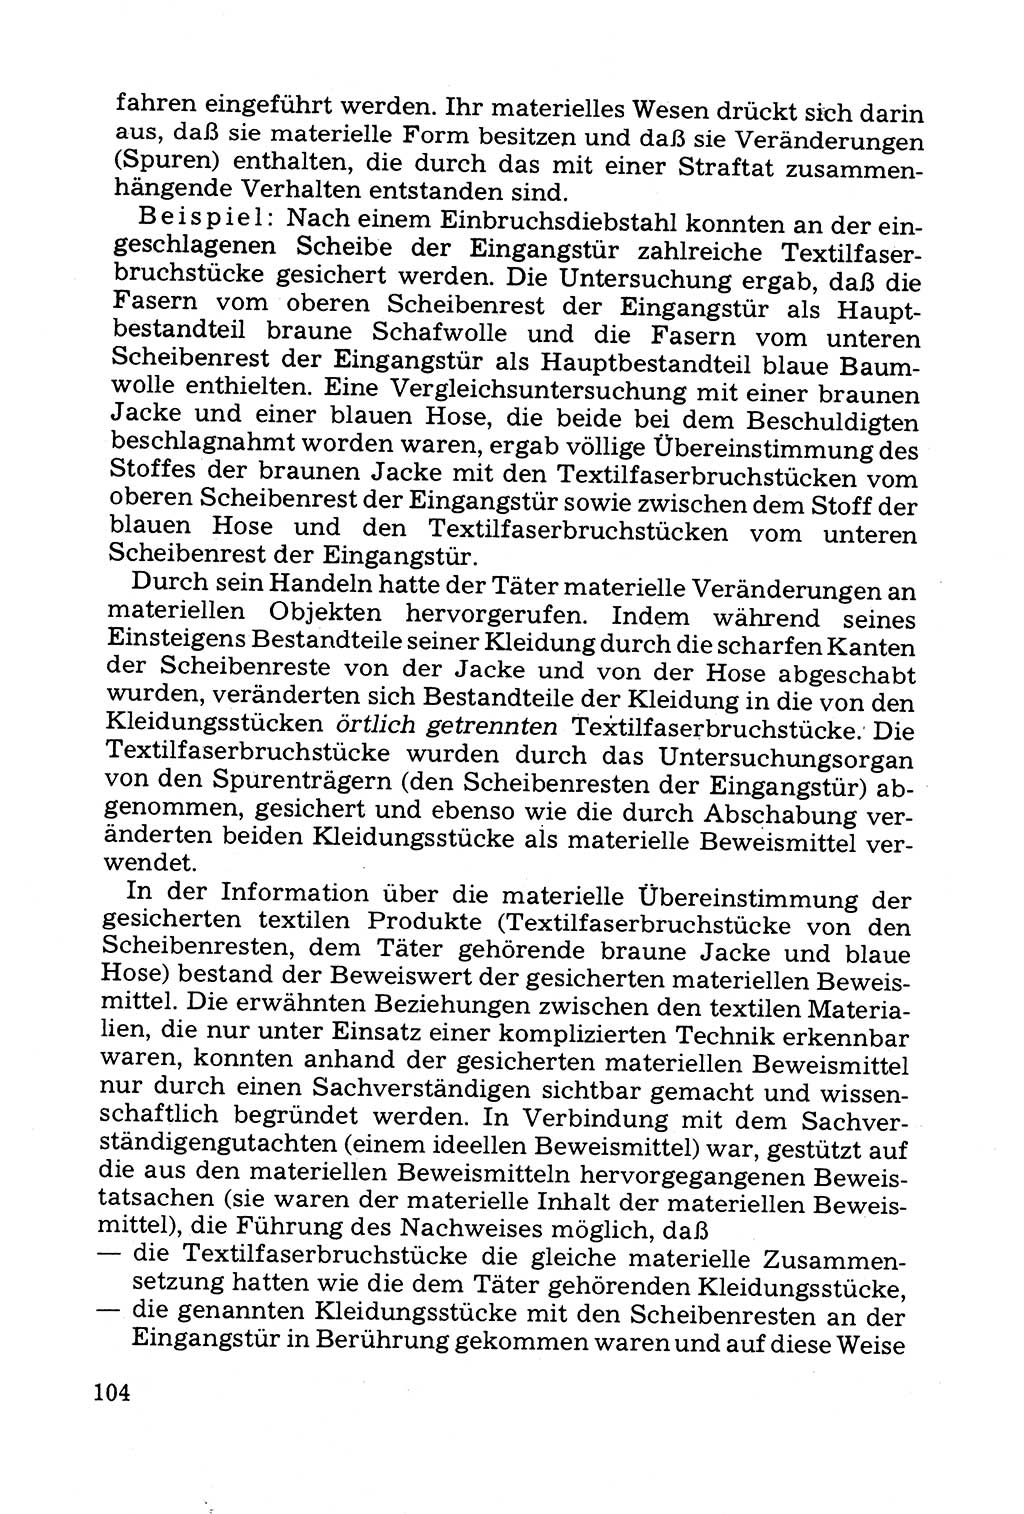 Grundfragen der Beweisführung im Ermittlungsverfahren [Deutsche Demokratische Republik (DDR)] 1980, Seite 104 (Bws.-Fhrg. EV DDR 1980, S. 104)